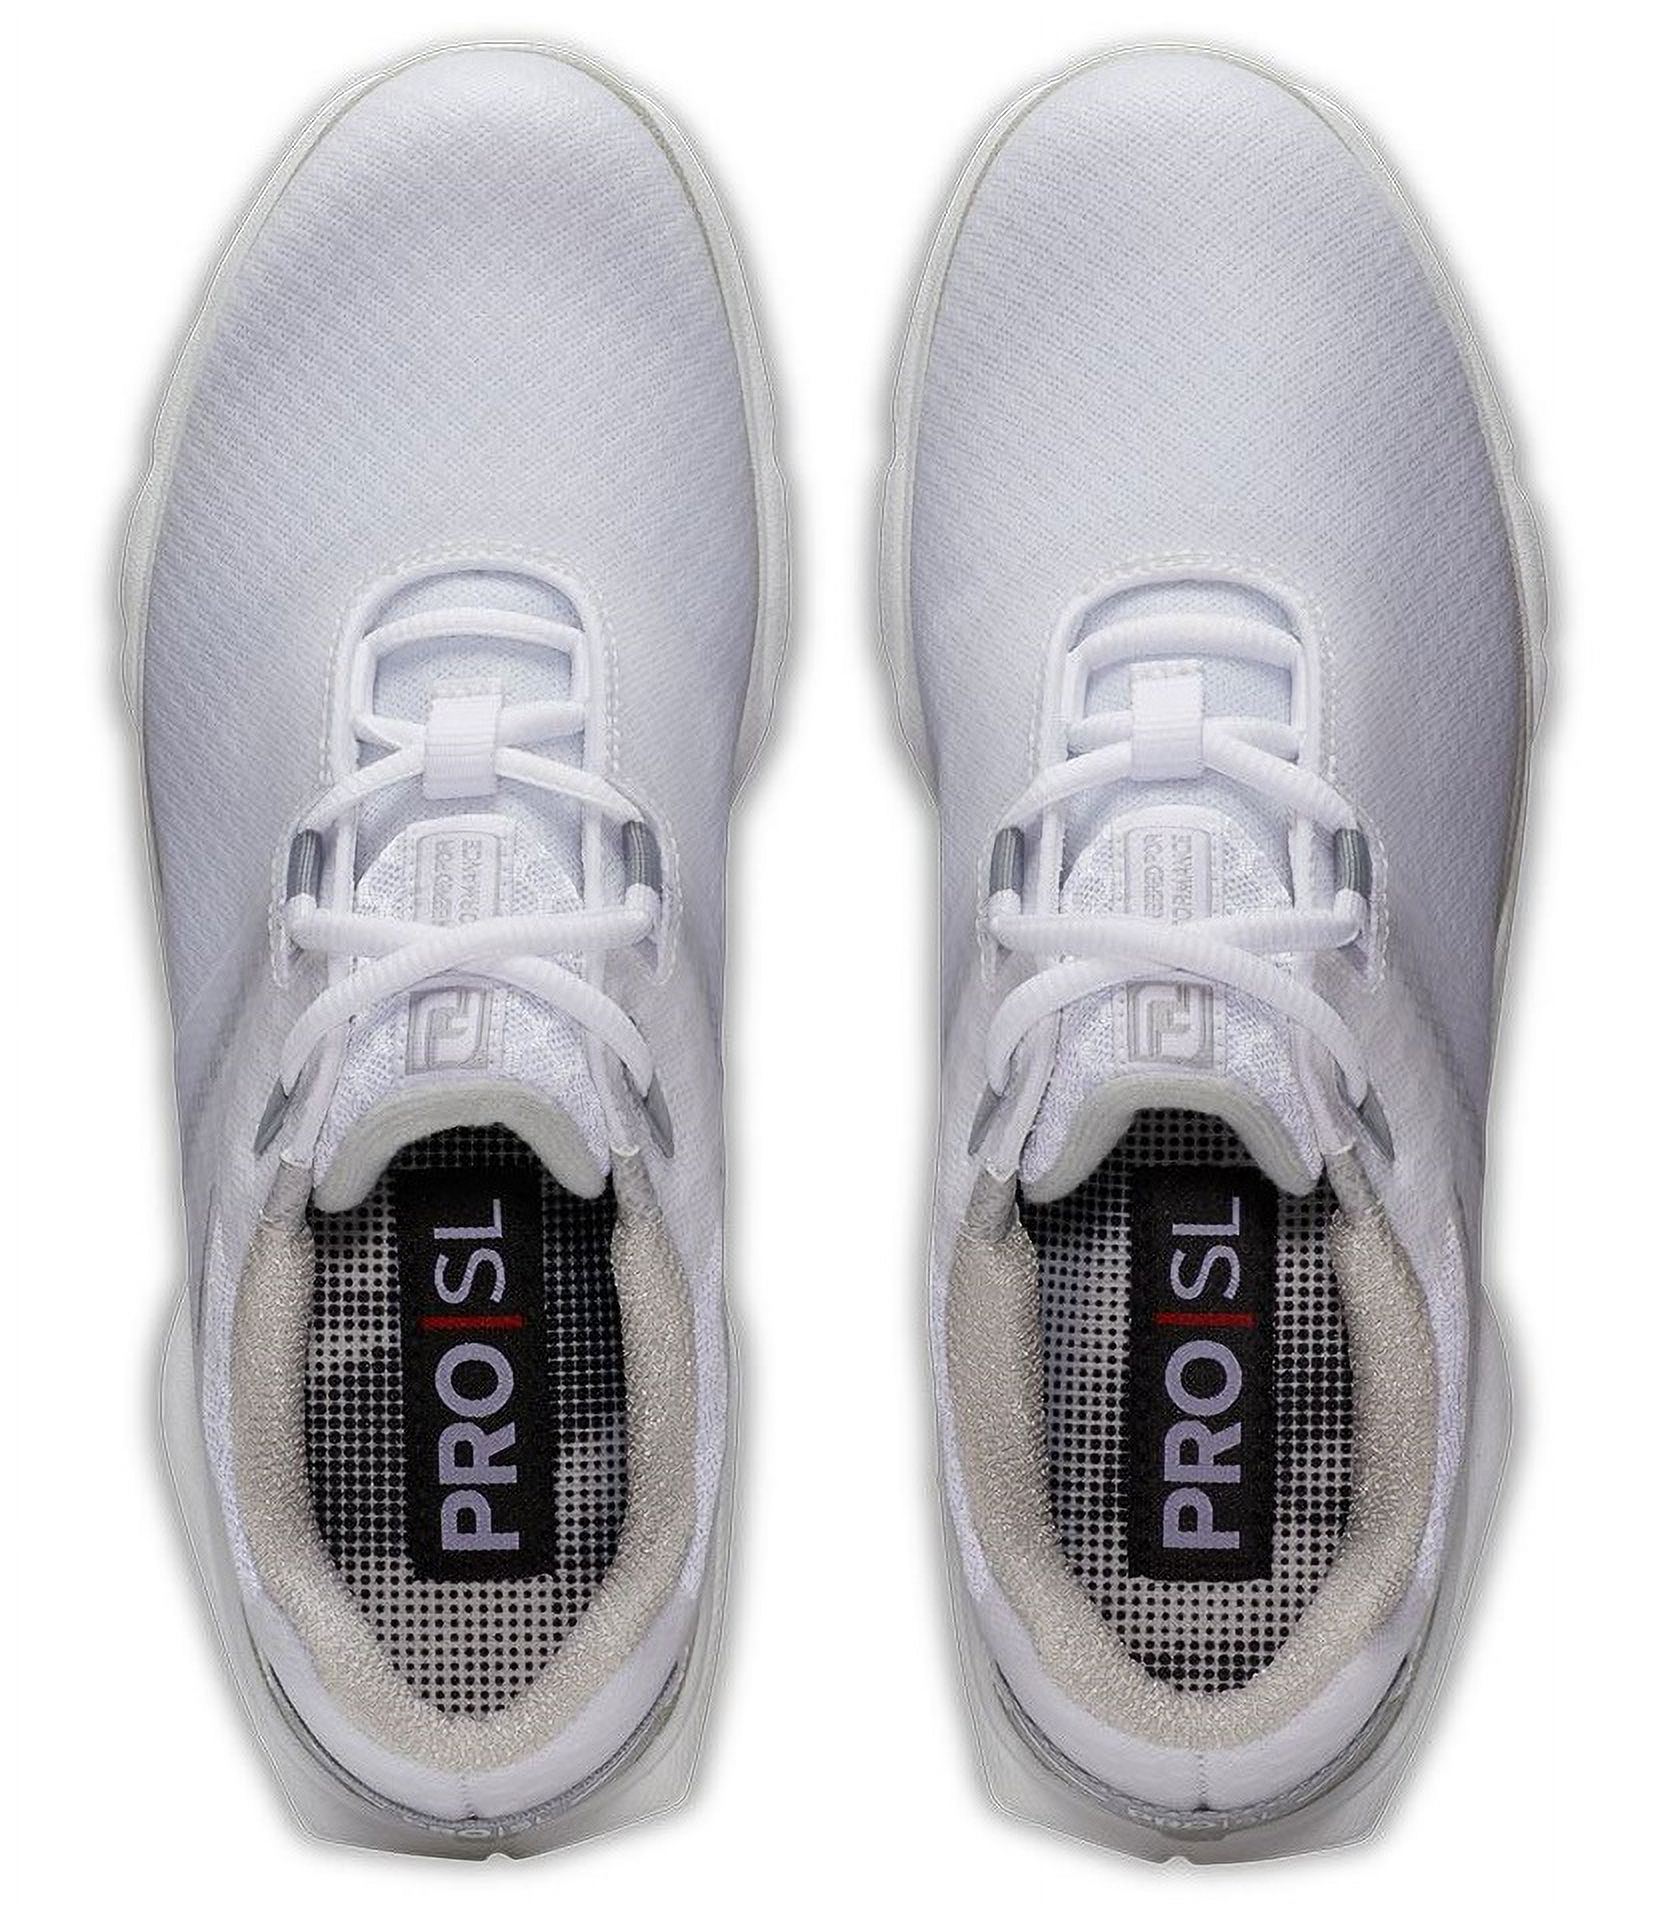 Puma Ignite Articulate White/Puma Silver/High Rise Men Golf Shoes Choose Size - image 2 of 3